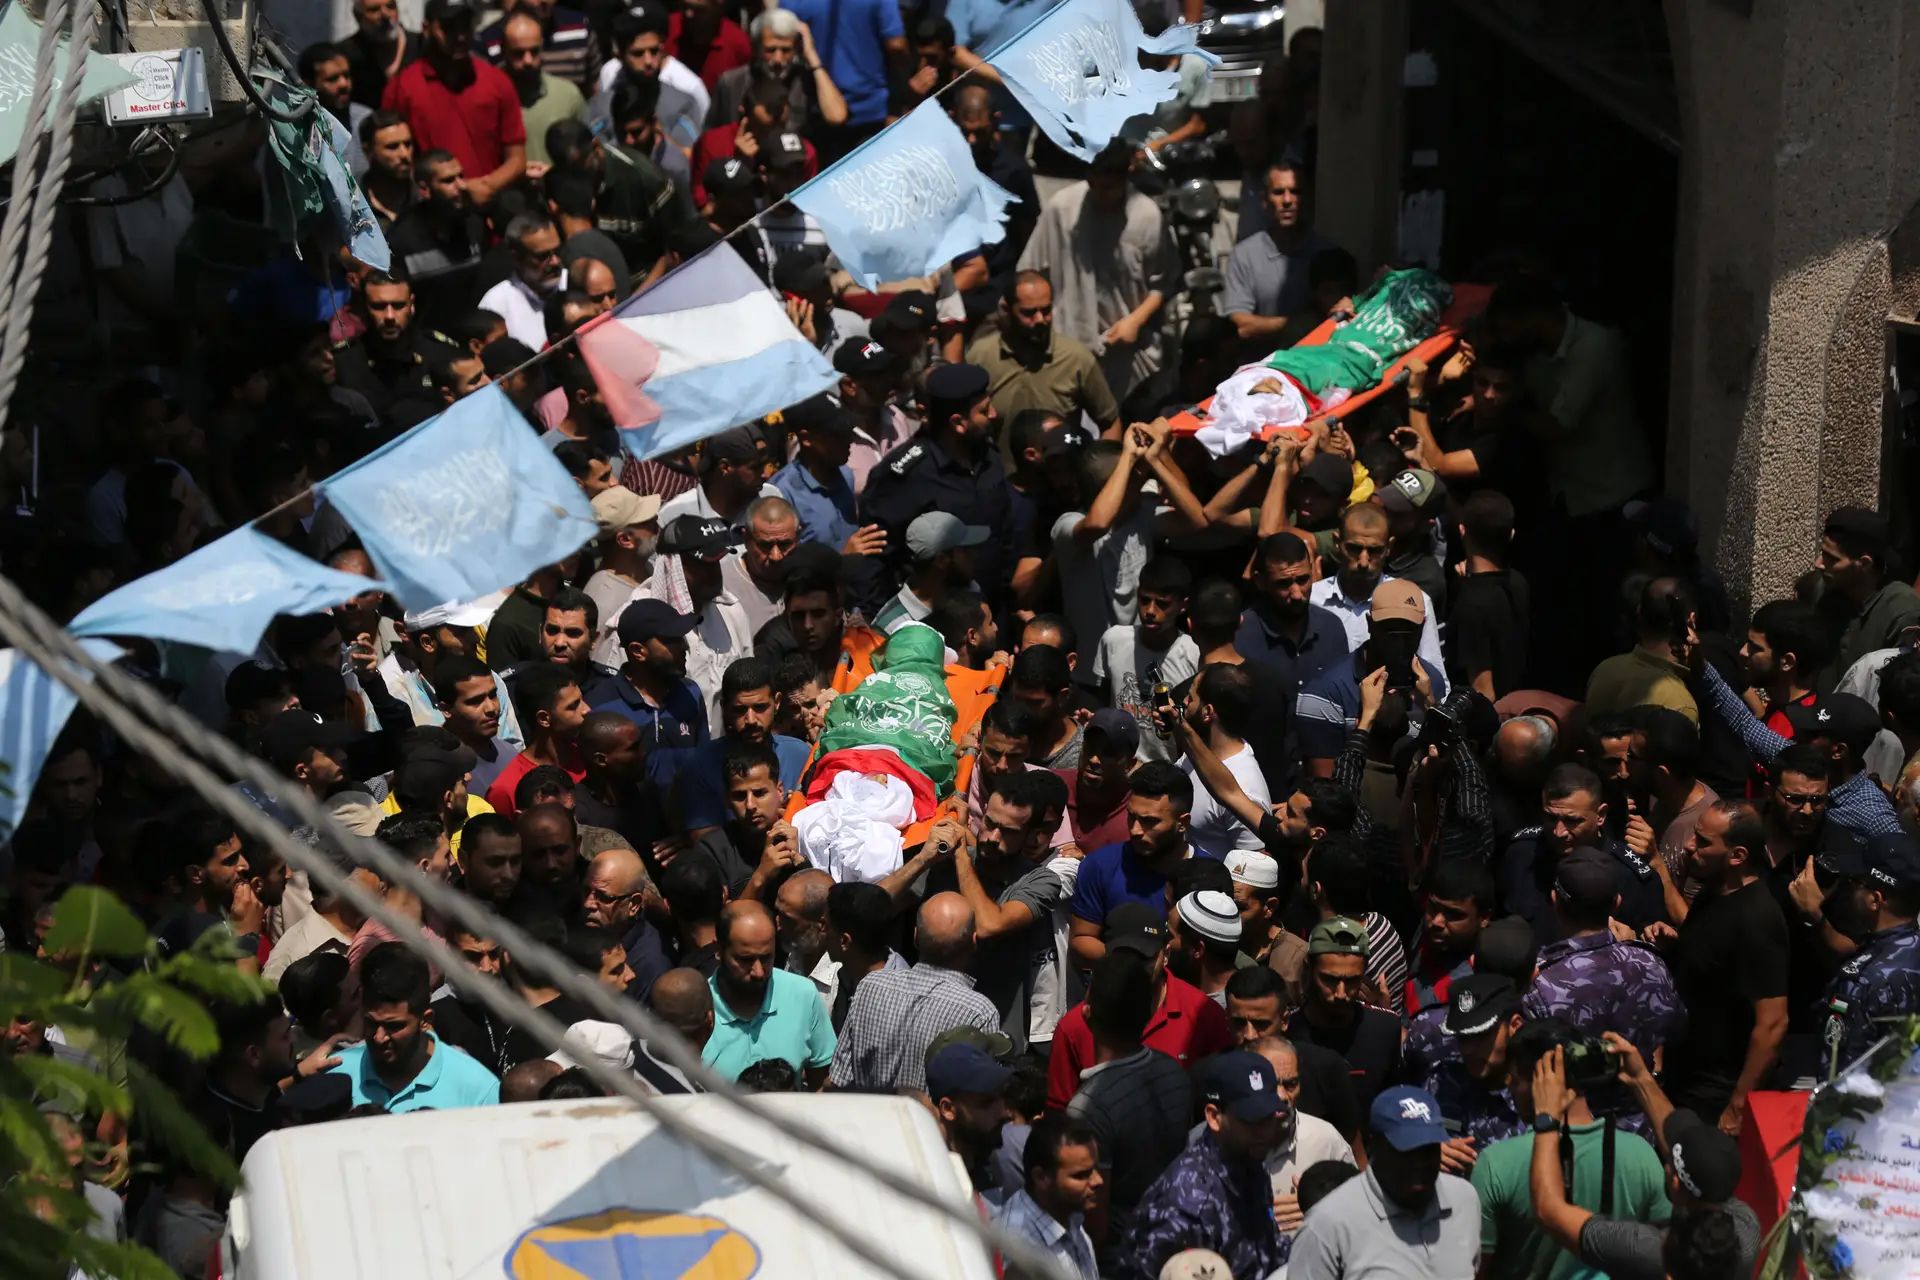 Os funerais arrastam toda a população de Gaza à rua